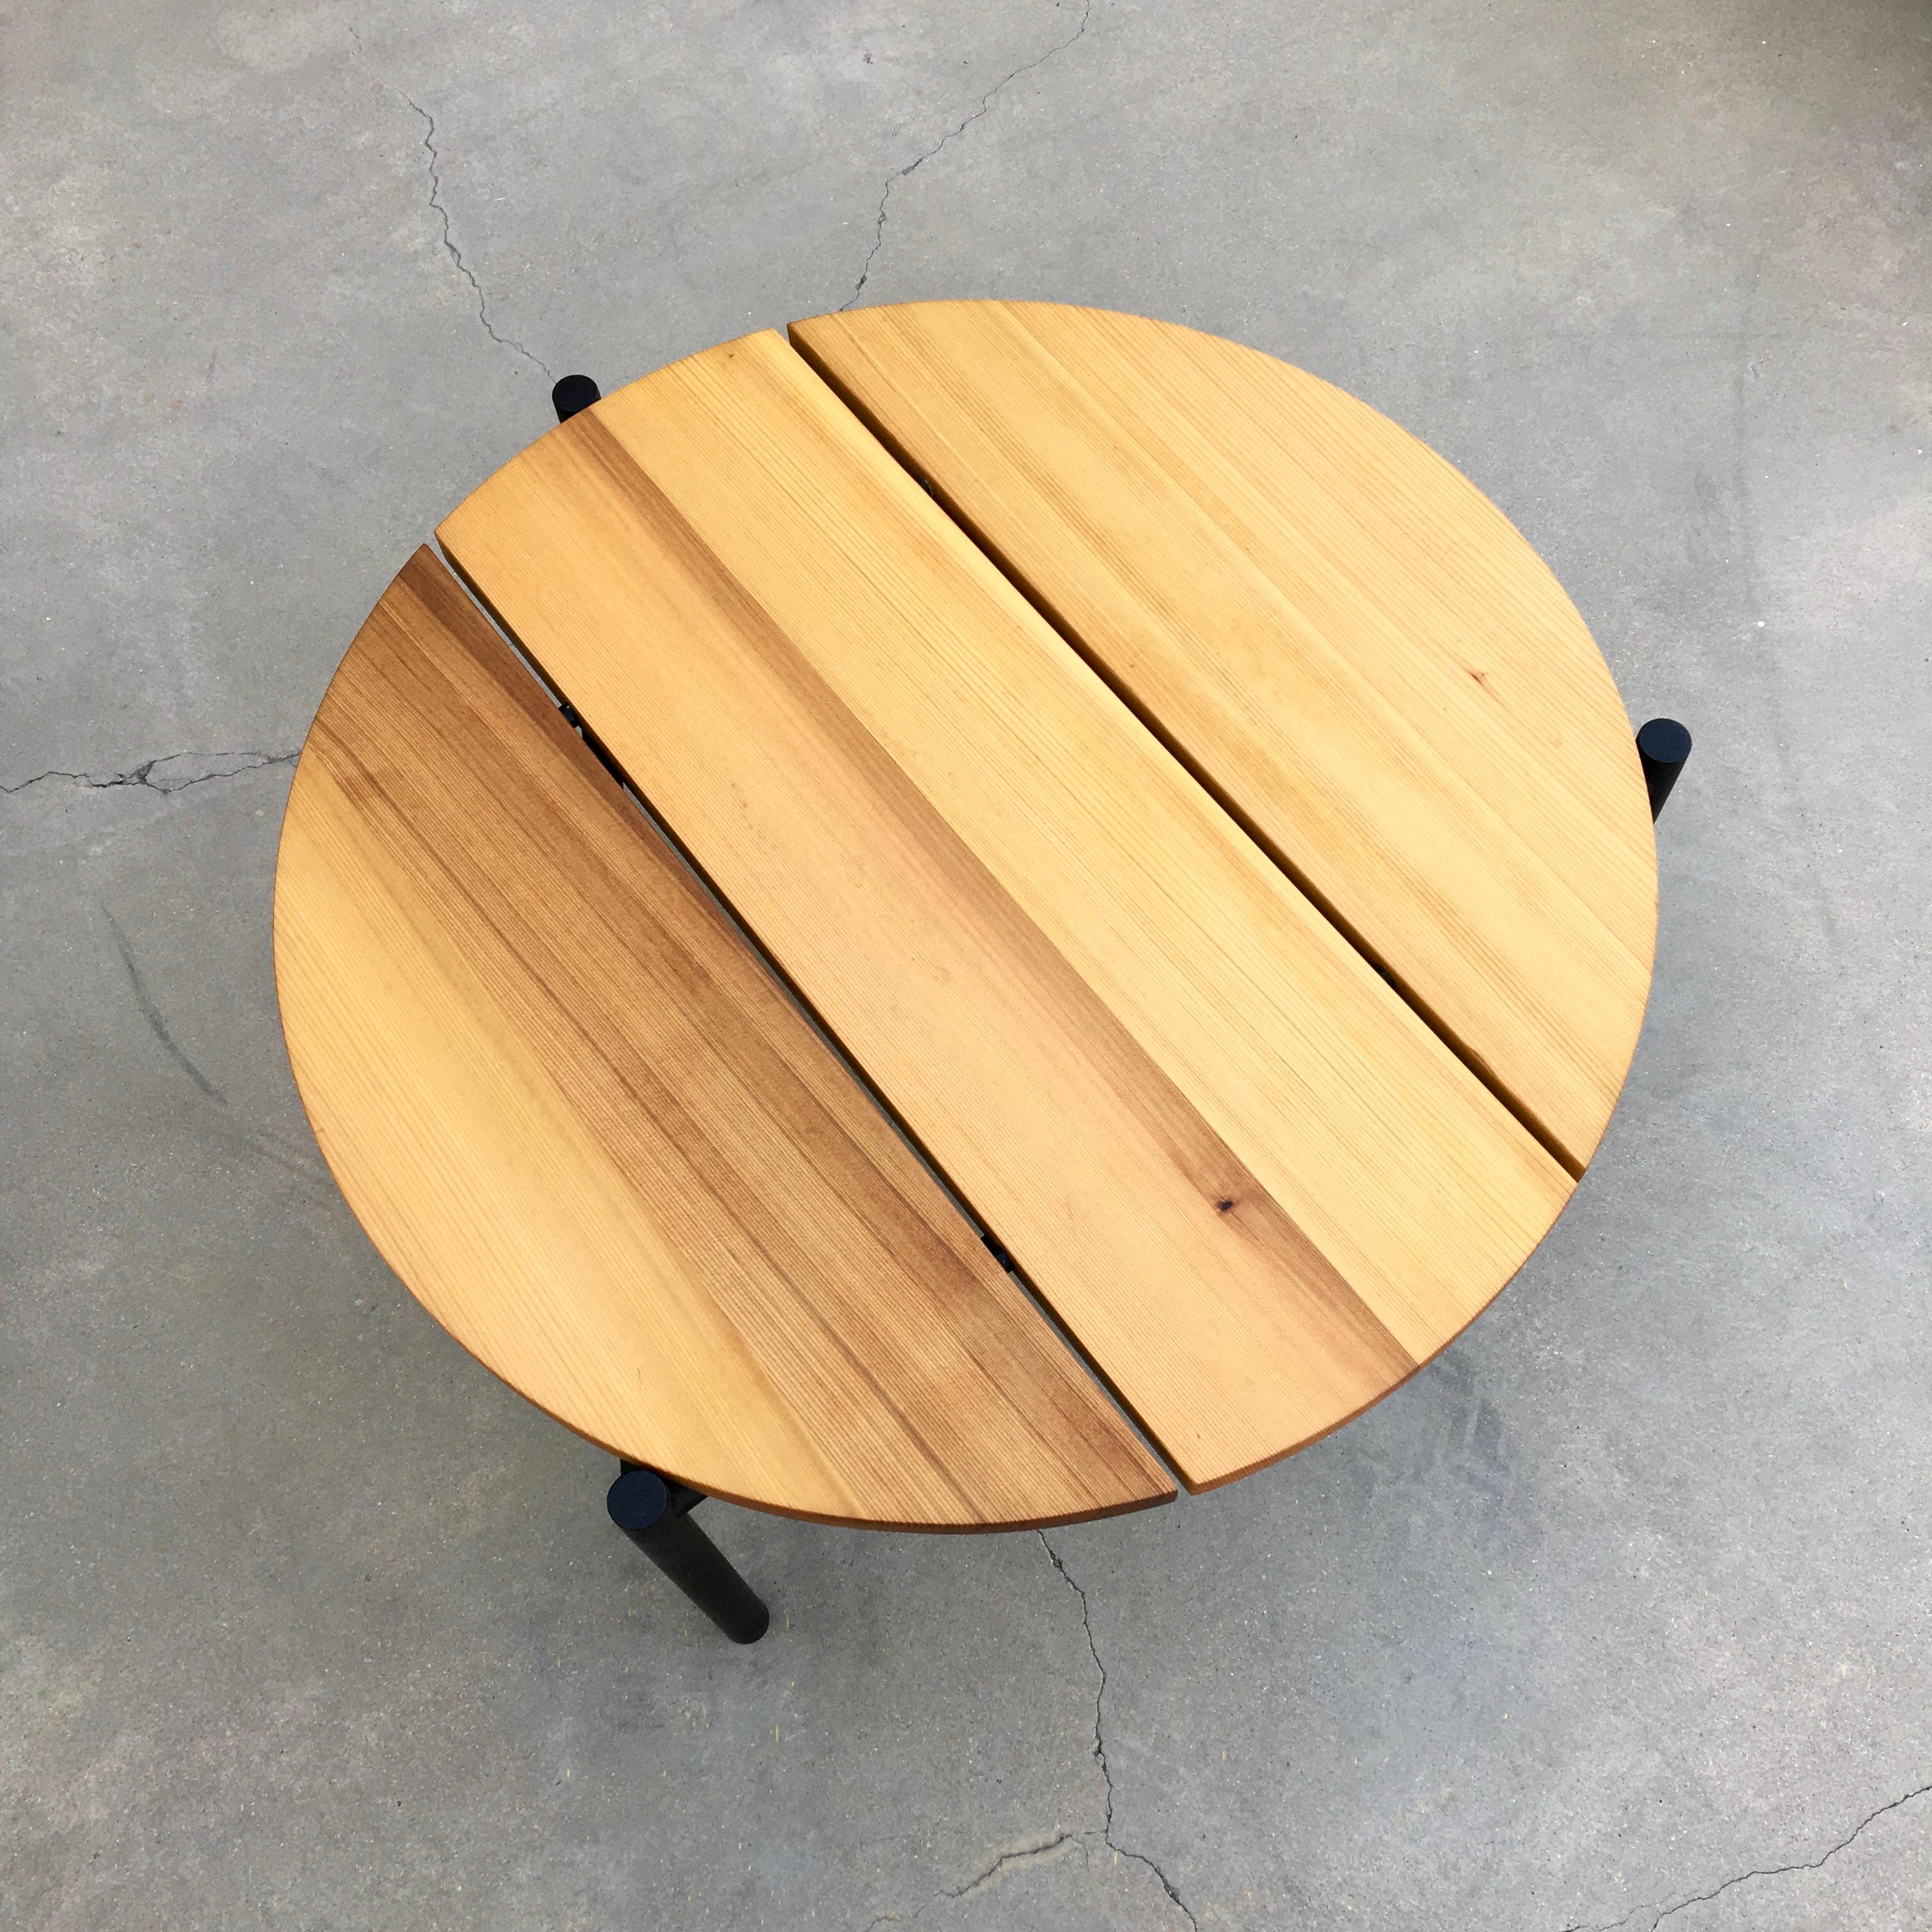 Dieser Tisch ist Teil der Madeira Line von Ten10. Der Tisch wird auf Bestellung gefertigt. Die Platte ist ein massives Brett aus geölter, vertikal gemaserter Western Red Cedar. Die Dielen sind 1 1/4